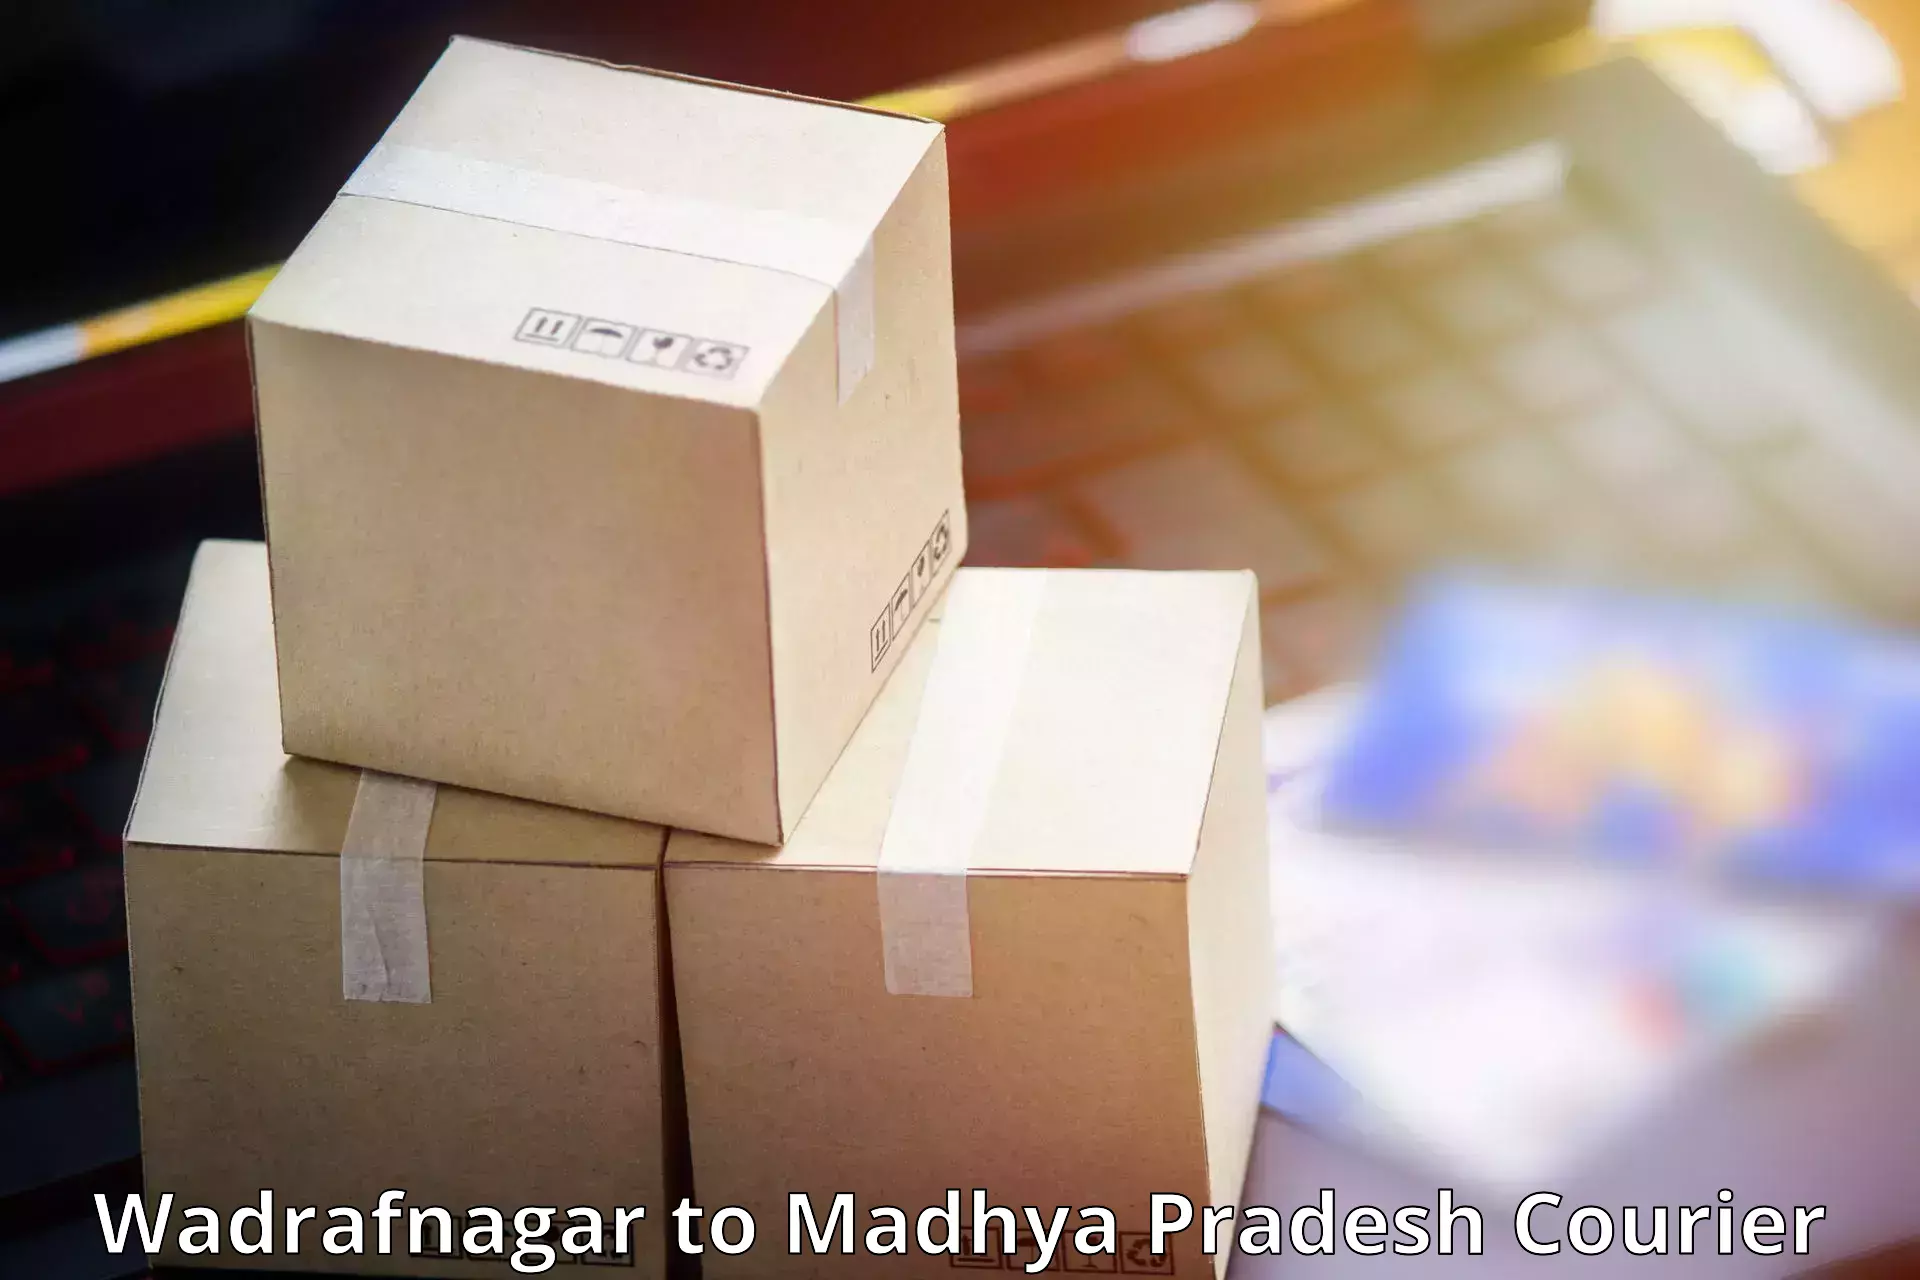 Advanced shipping network Wadrafnagar to Singrauli